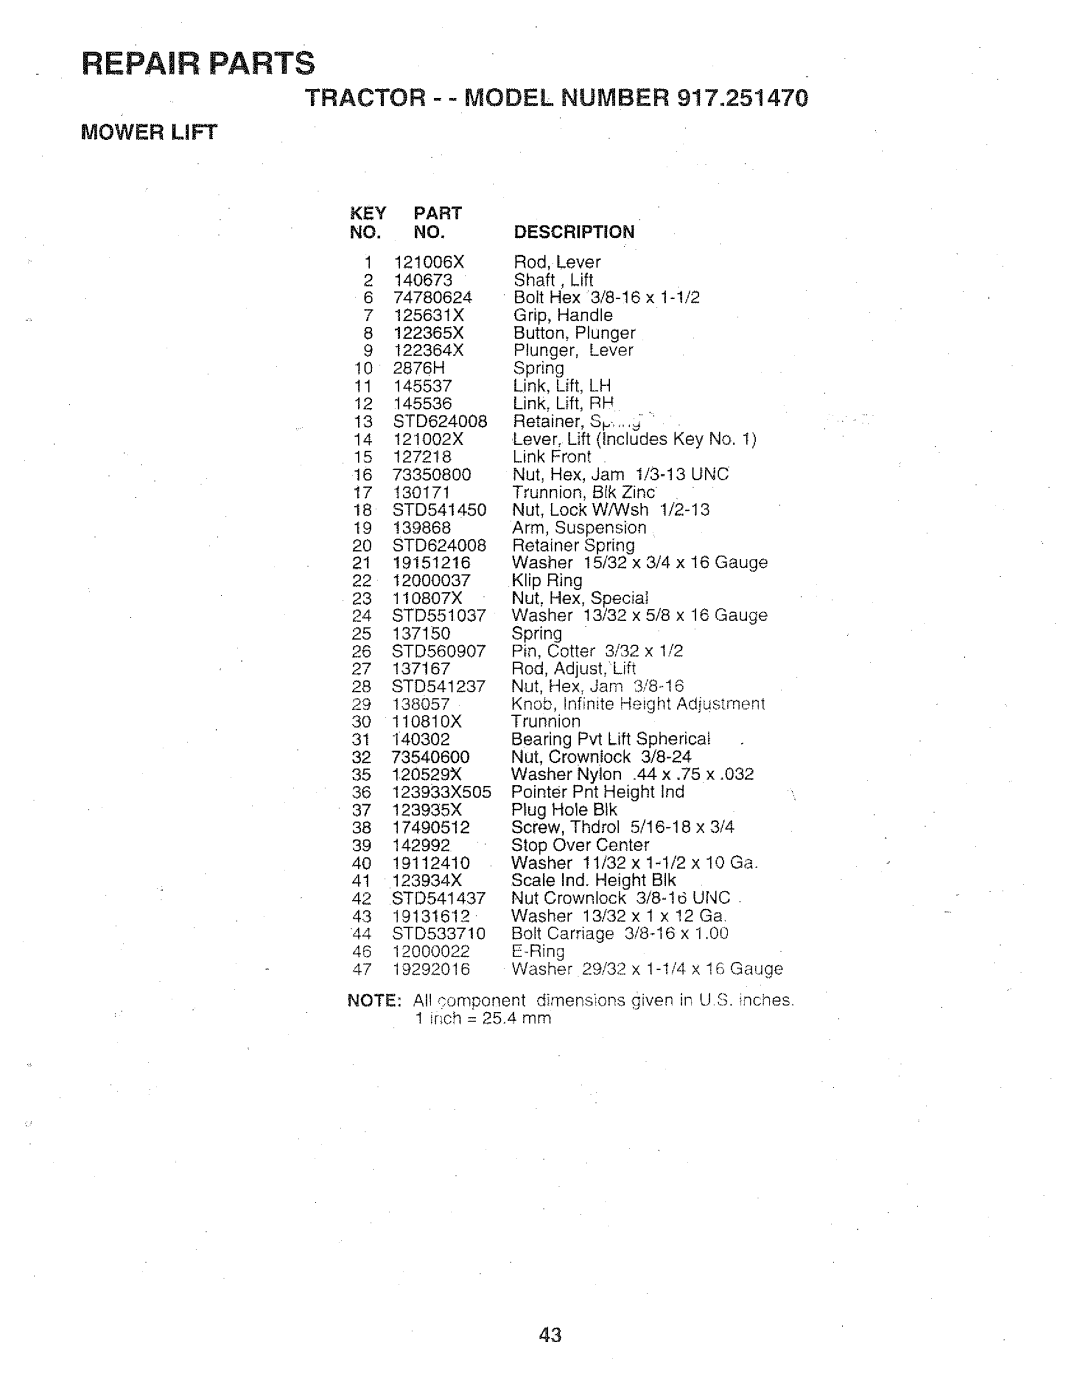 Sears 917.25147 owner manual Mower Lift, Repair Parts, Tractor - - Model Number, KEY PART NO. NO 1121006X, Description 